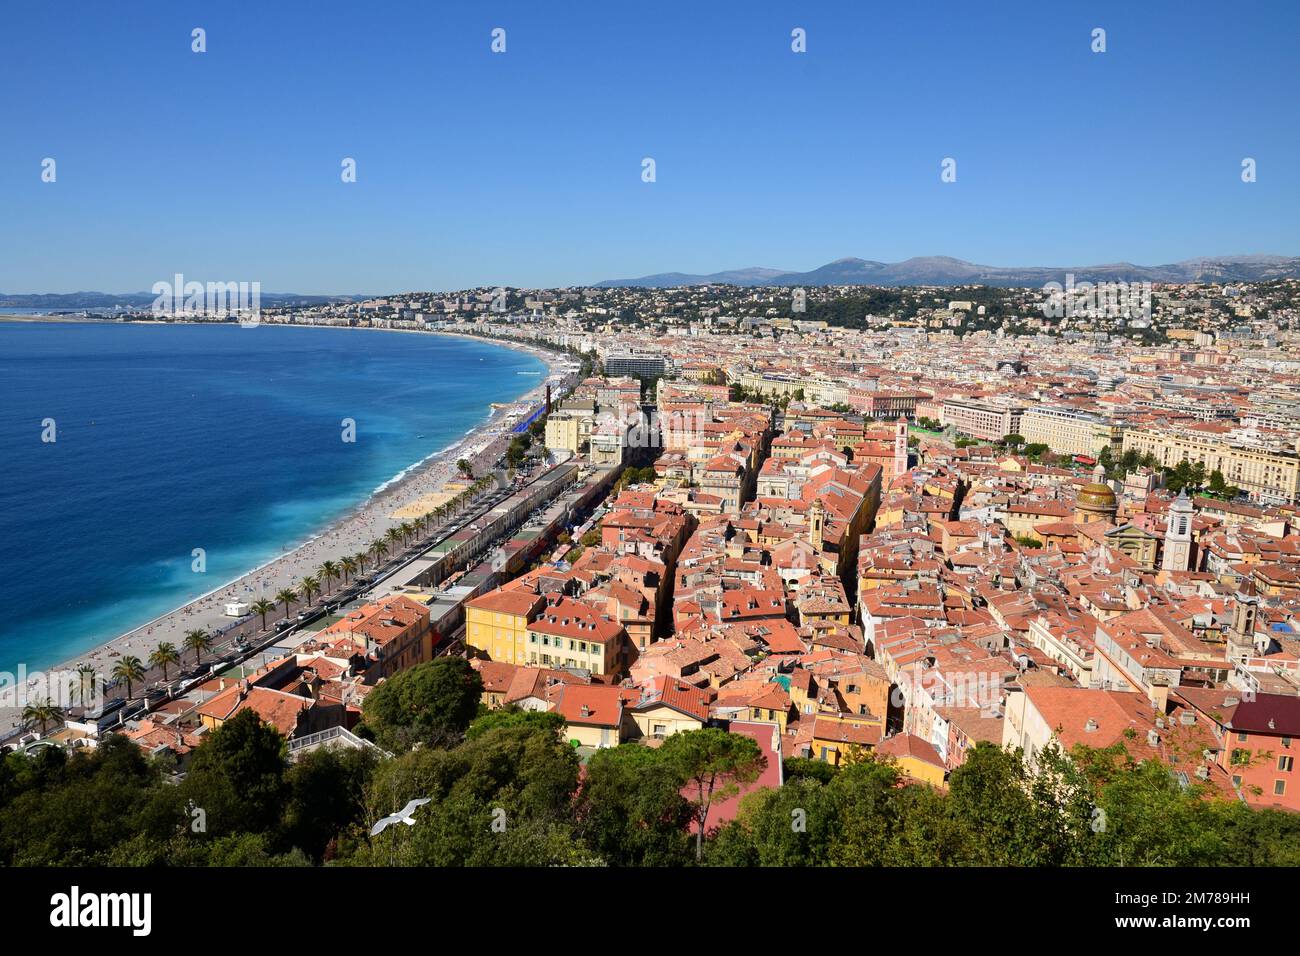 Francia, costa azzurra, Nizza città vista dalla collina del castello offre un magnifico panorama sulla baia degli Angeli e la città vecchia. Foto Stock